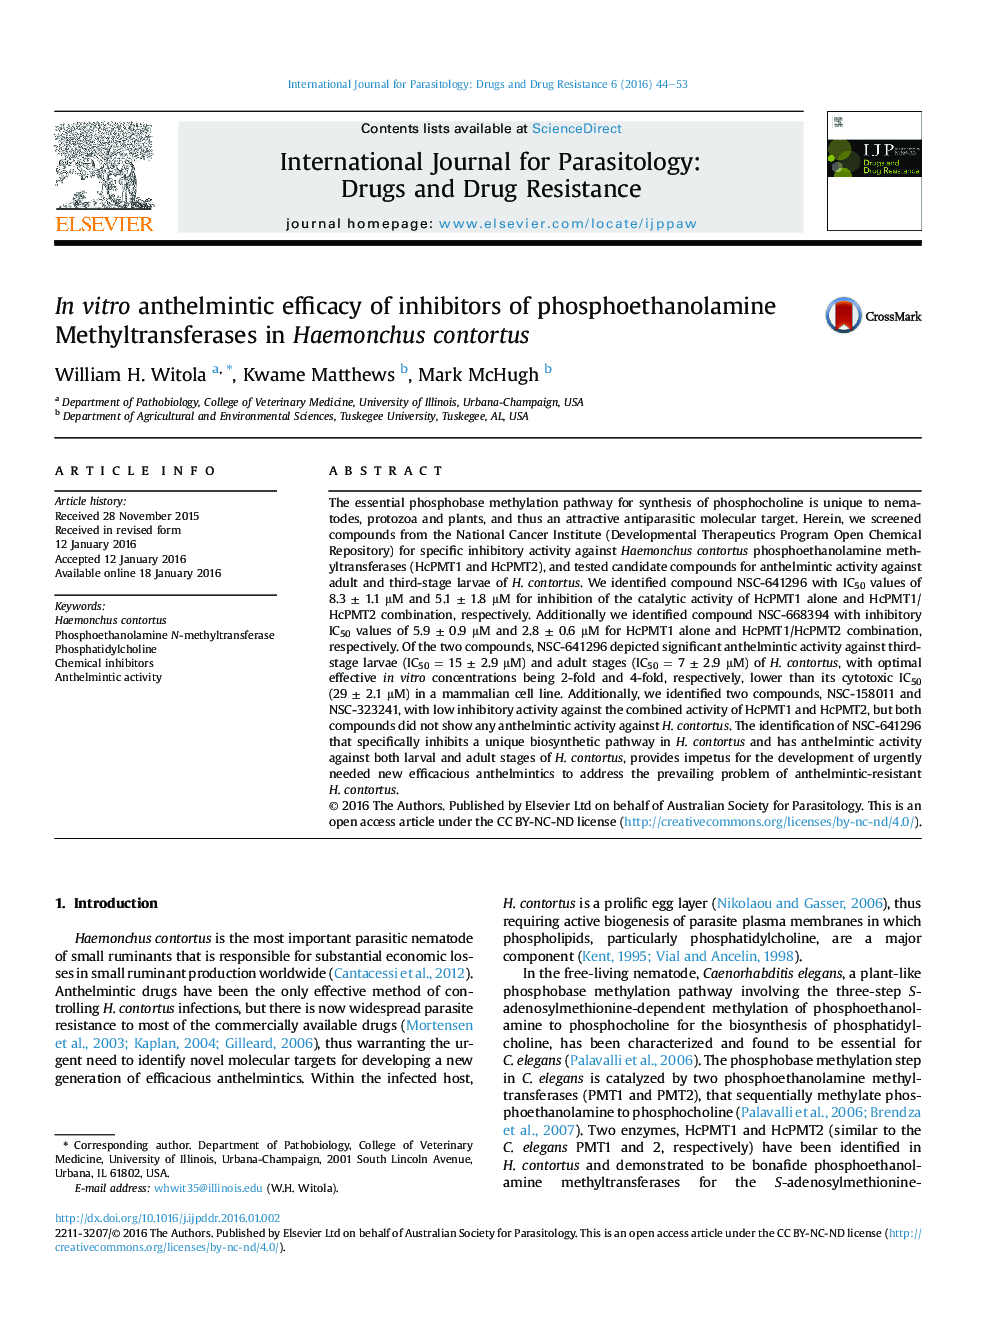 اثربخشی انتهلمینتیک در شرایط آزمایشگاهی از مهارکننده های متیل phosphoethanolamine در contortus همونکوس